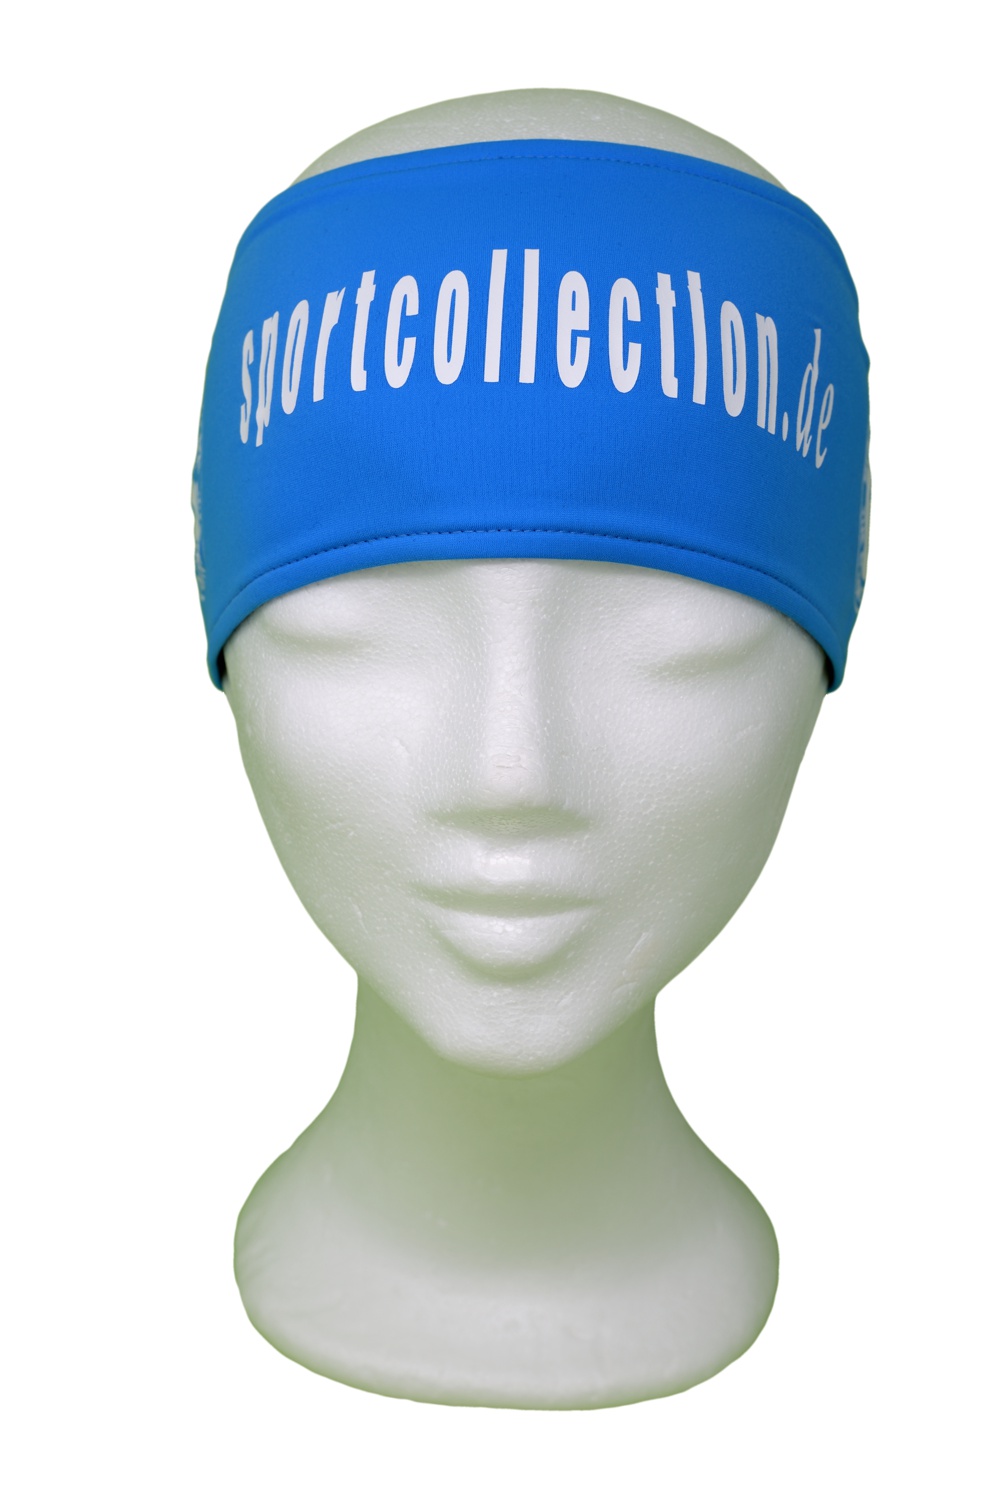 Stöhr Stirnband Blau-Weiß-Text-Groß-Logo Kopie